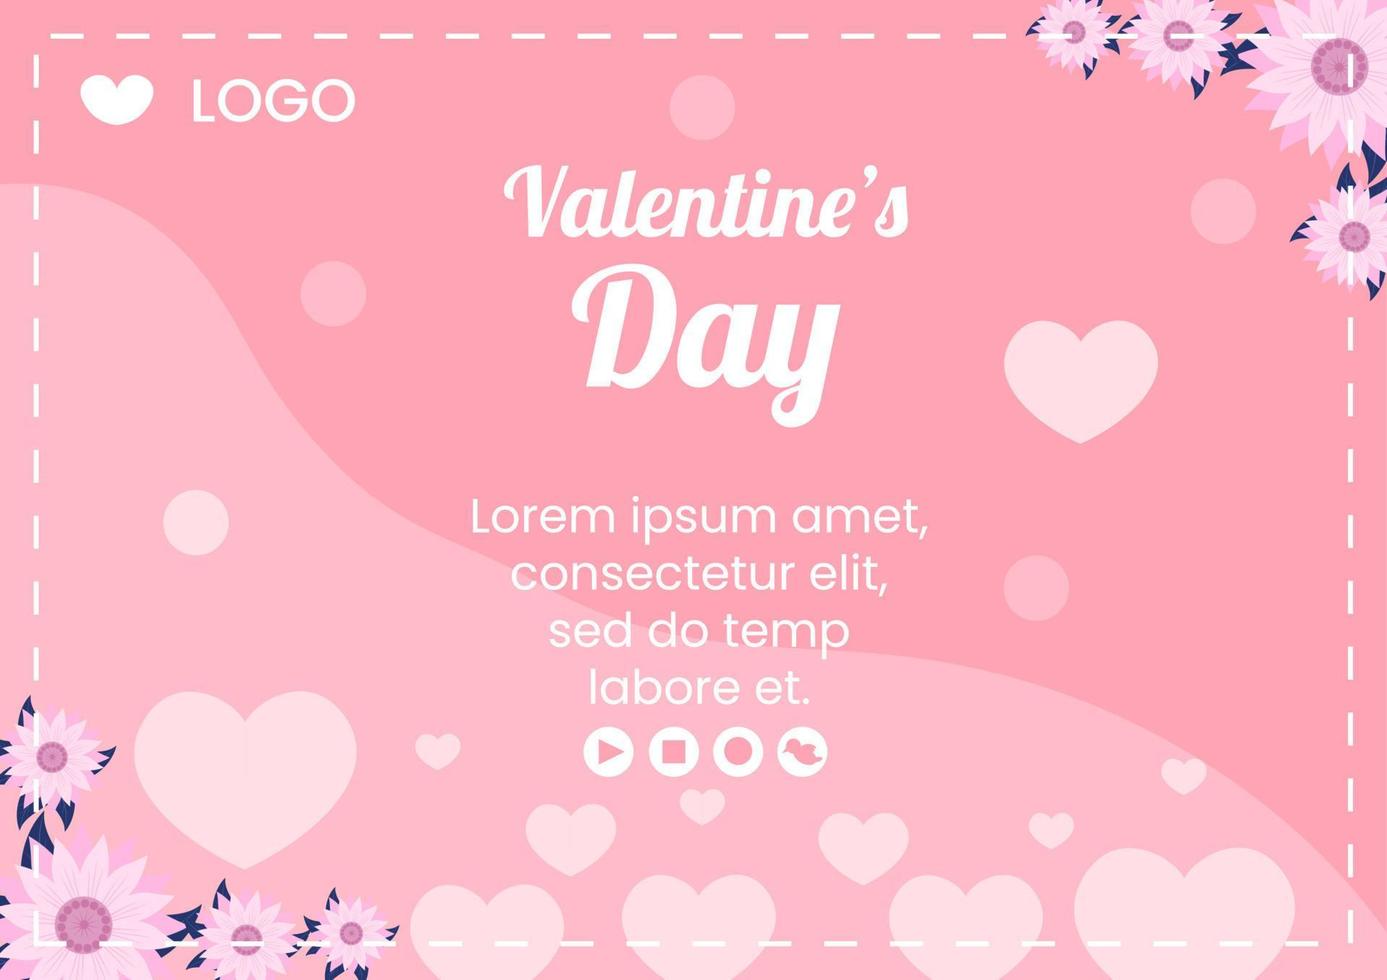 gelukkige Valentijnsdag brochure sjabloon platte ontwerp illustratie bewerkbaar van vierkante achtergrond voor sociale media, liefde wenskaart of banner vector